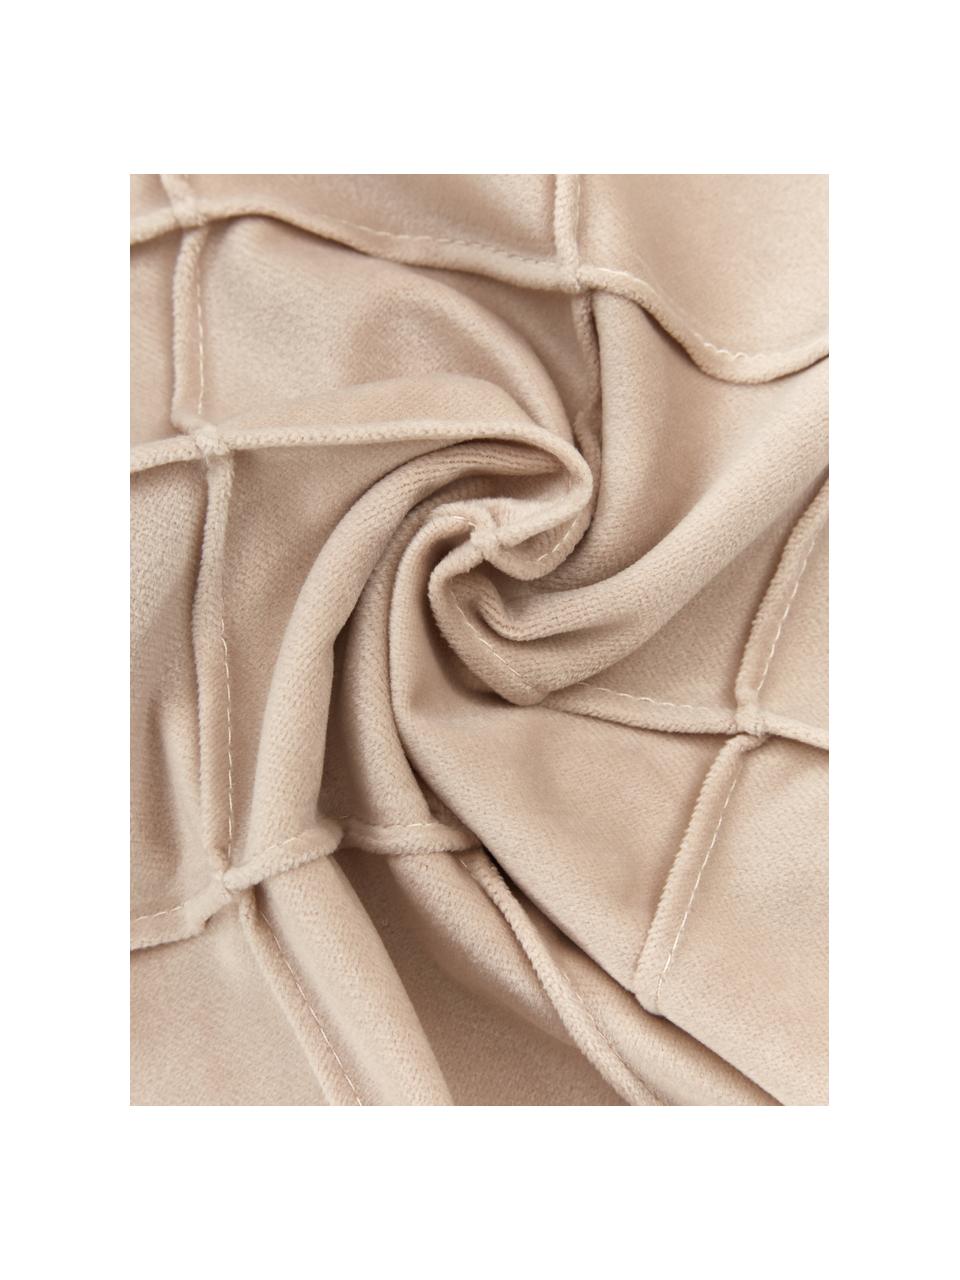 Fluwelen kussenhoes Luka in beige met structuur-ruitpatroon, Fluweel (100% polyester), Beige, B 50 x L 50 cm